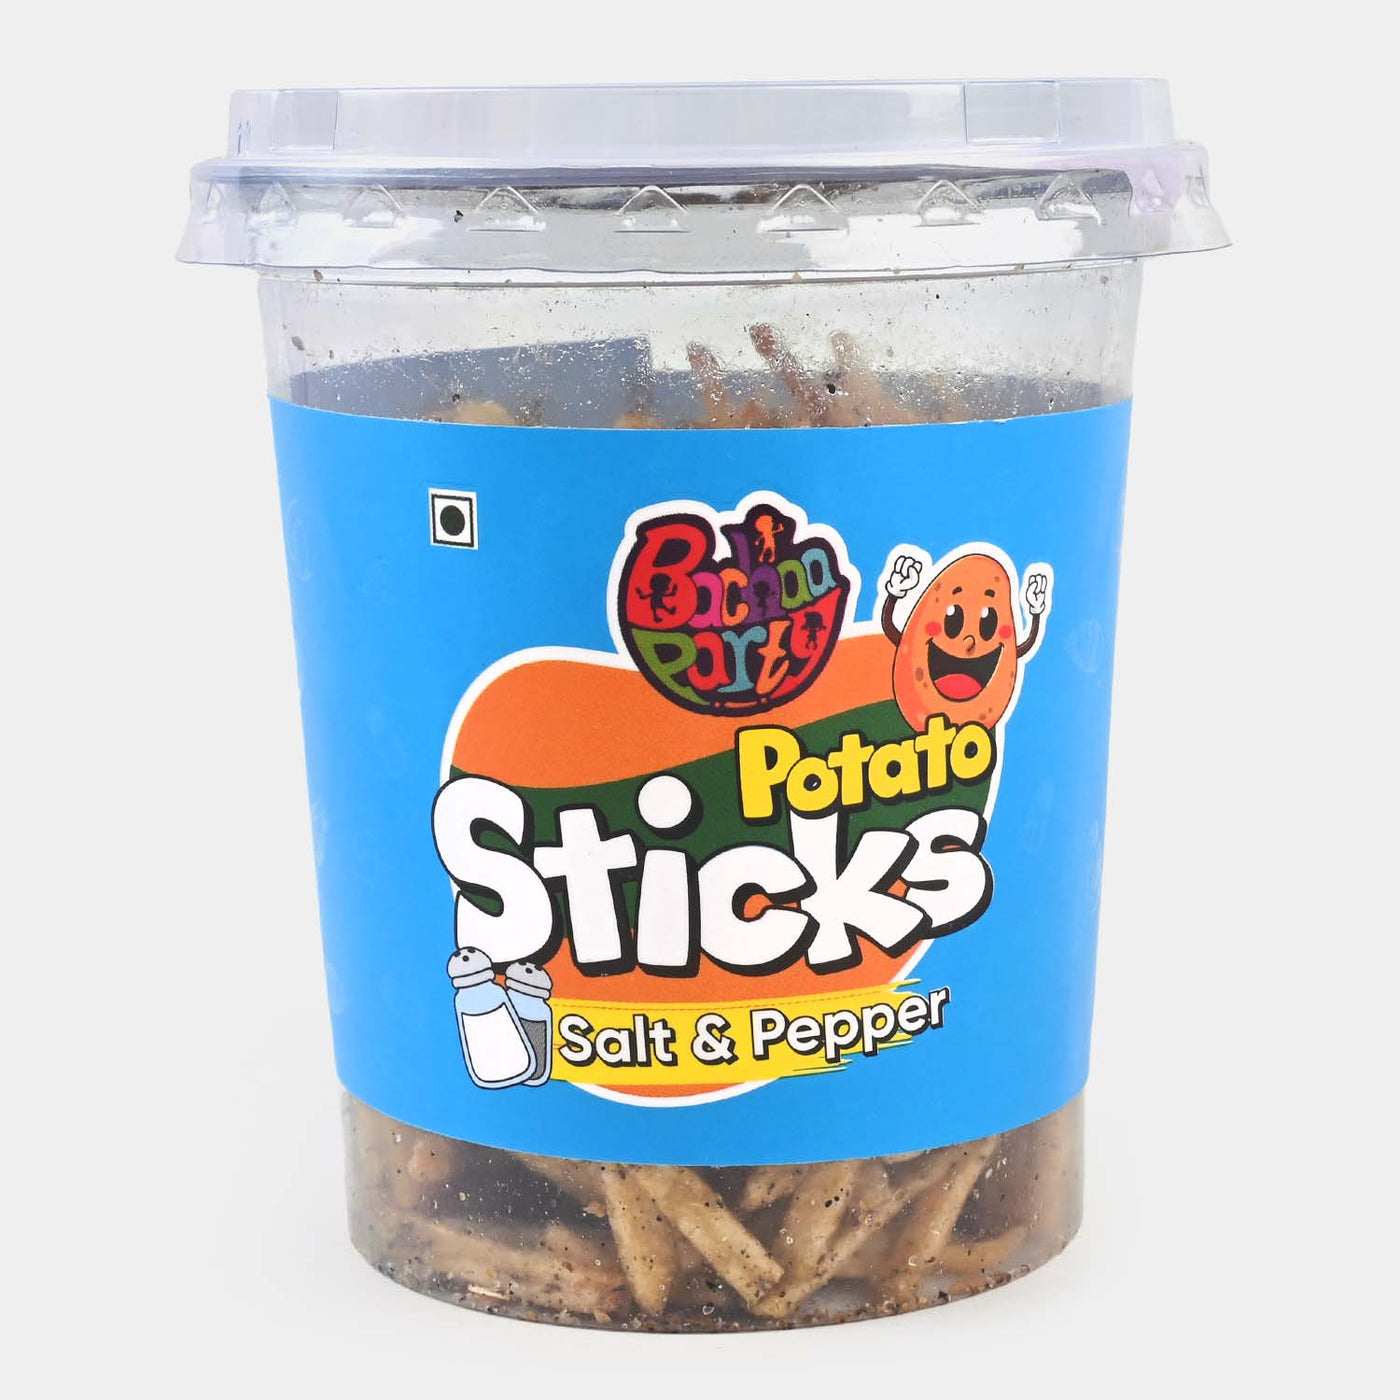 Bachaa Party Potato Sticks (Salt & Pepper)